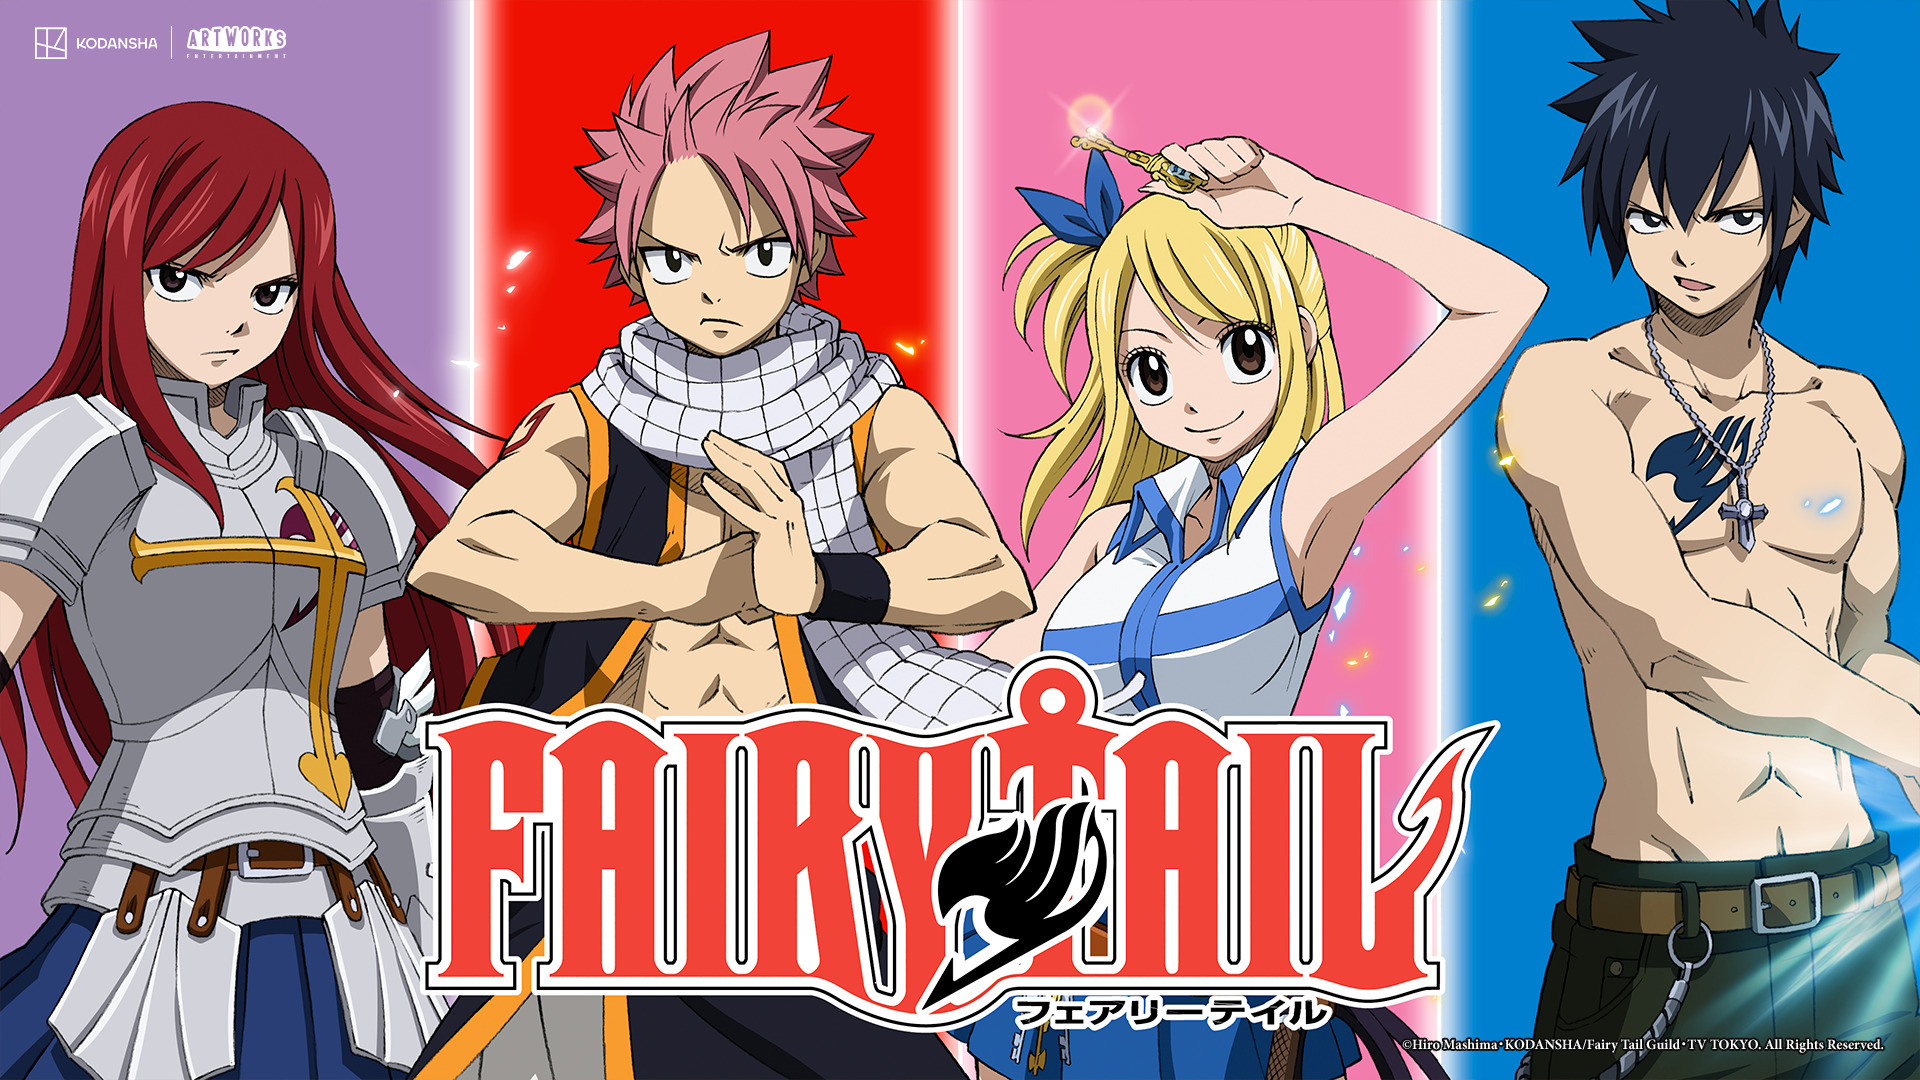 Dubladores de Animes - Fairy tail